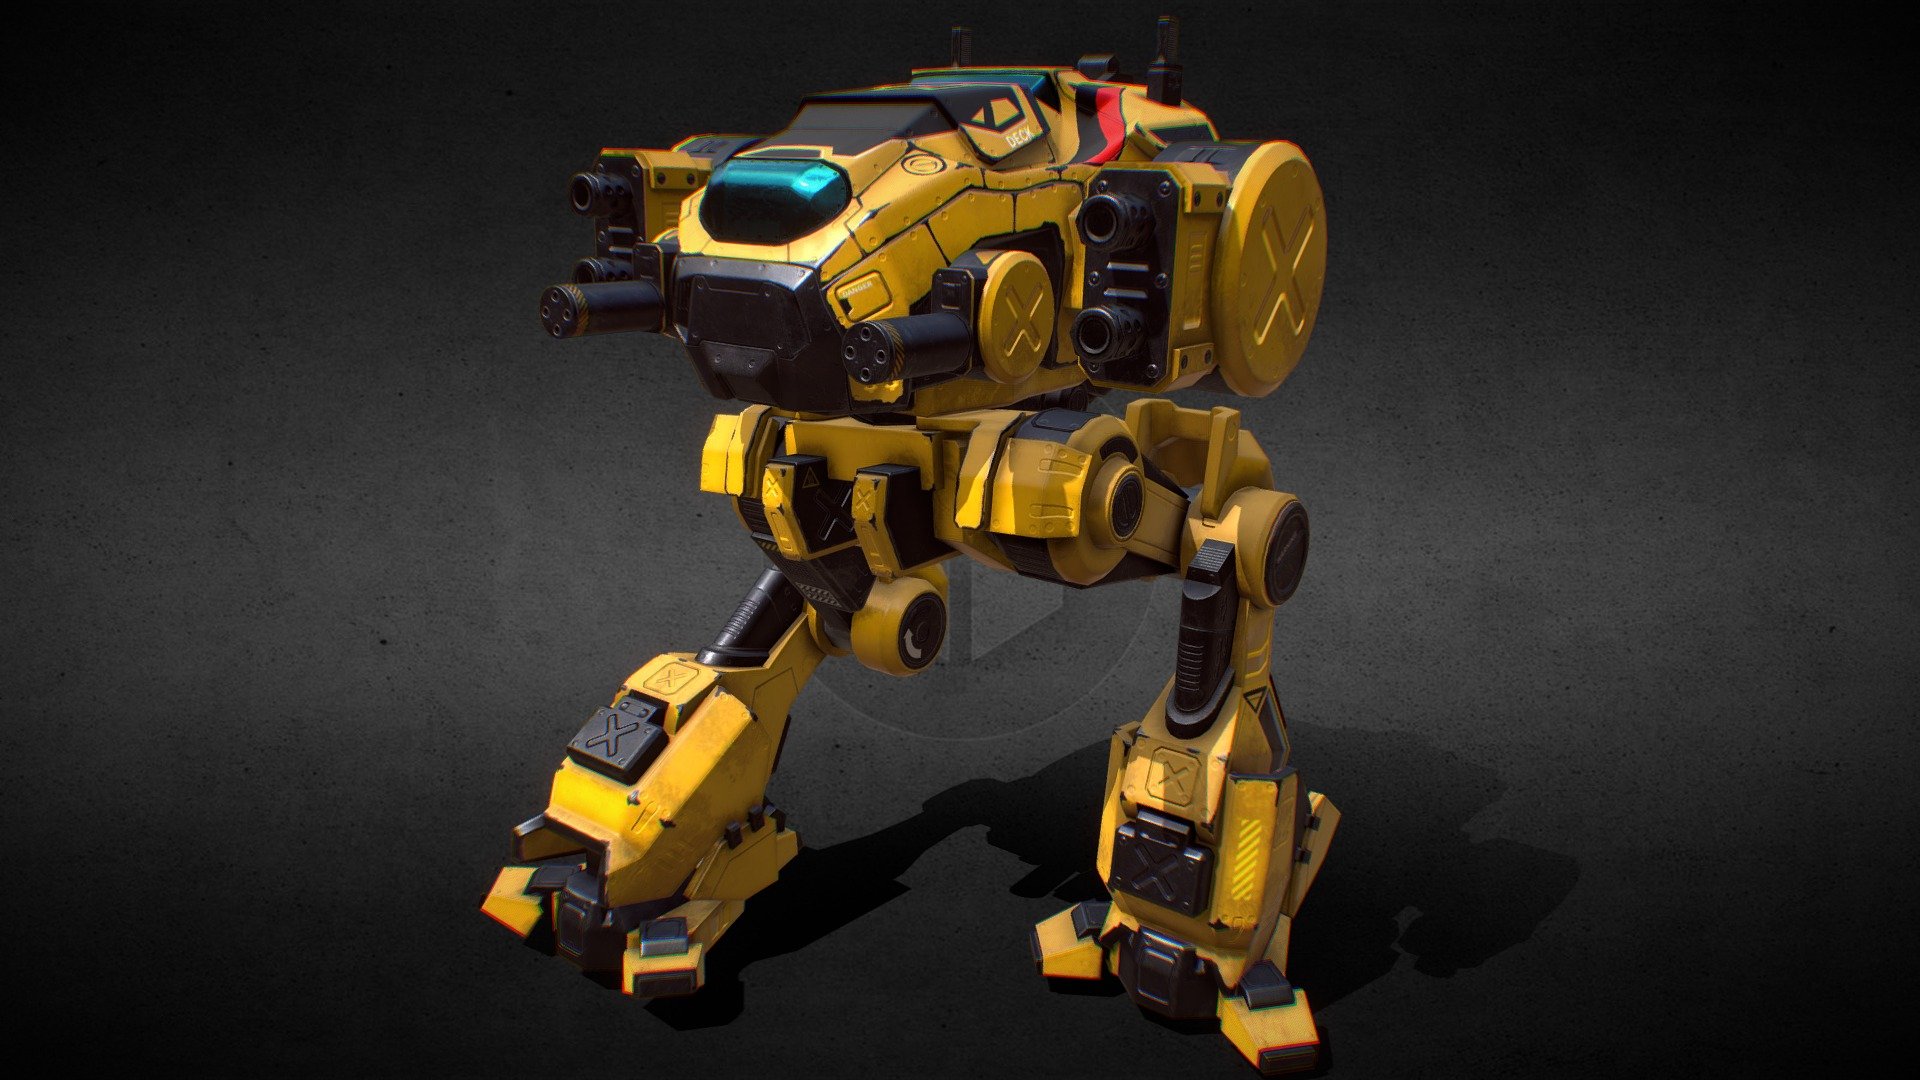 Battle Mech from my unity package “PBR Modular mechs” - Battle Mech v4 yellow - 3D model by Dmitrii_Kutsenko (@Dmitrii_Kutcenko) 3d model